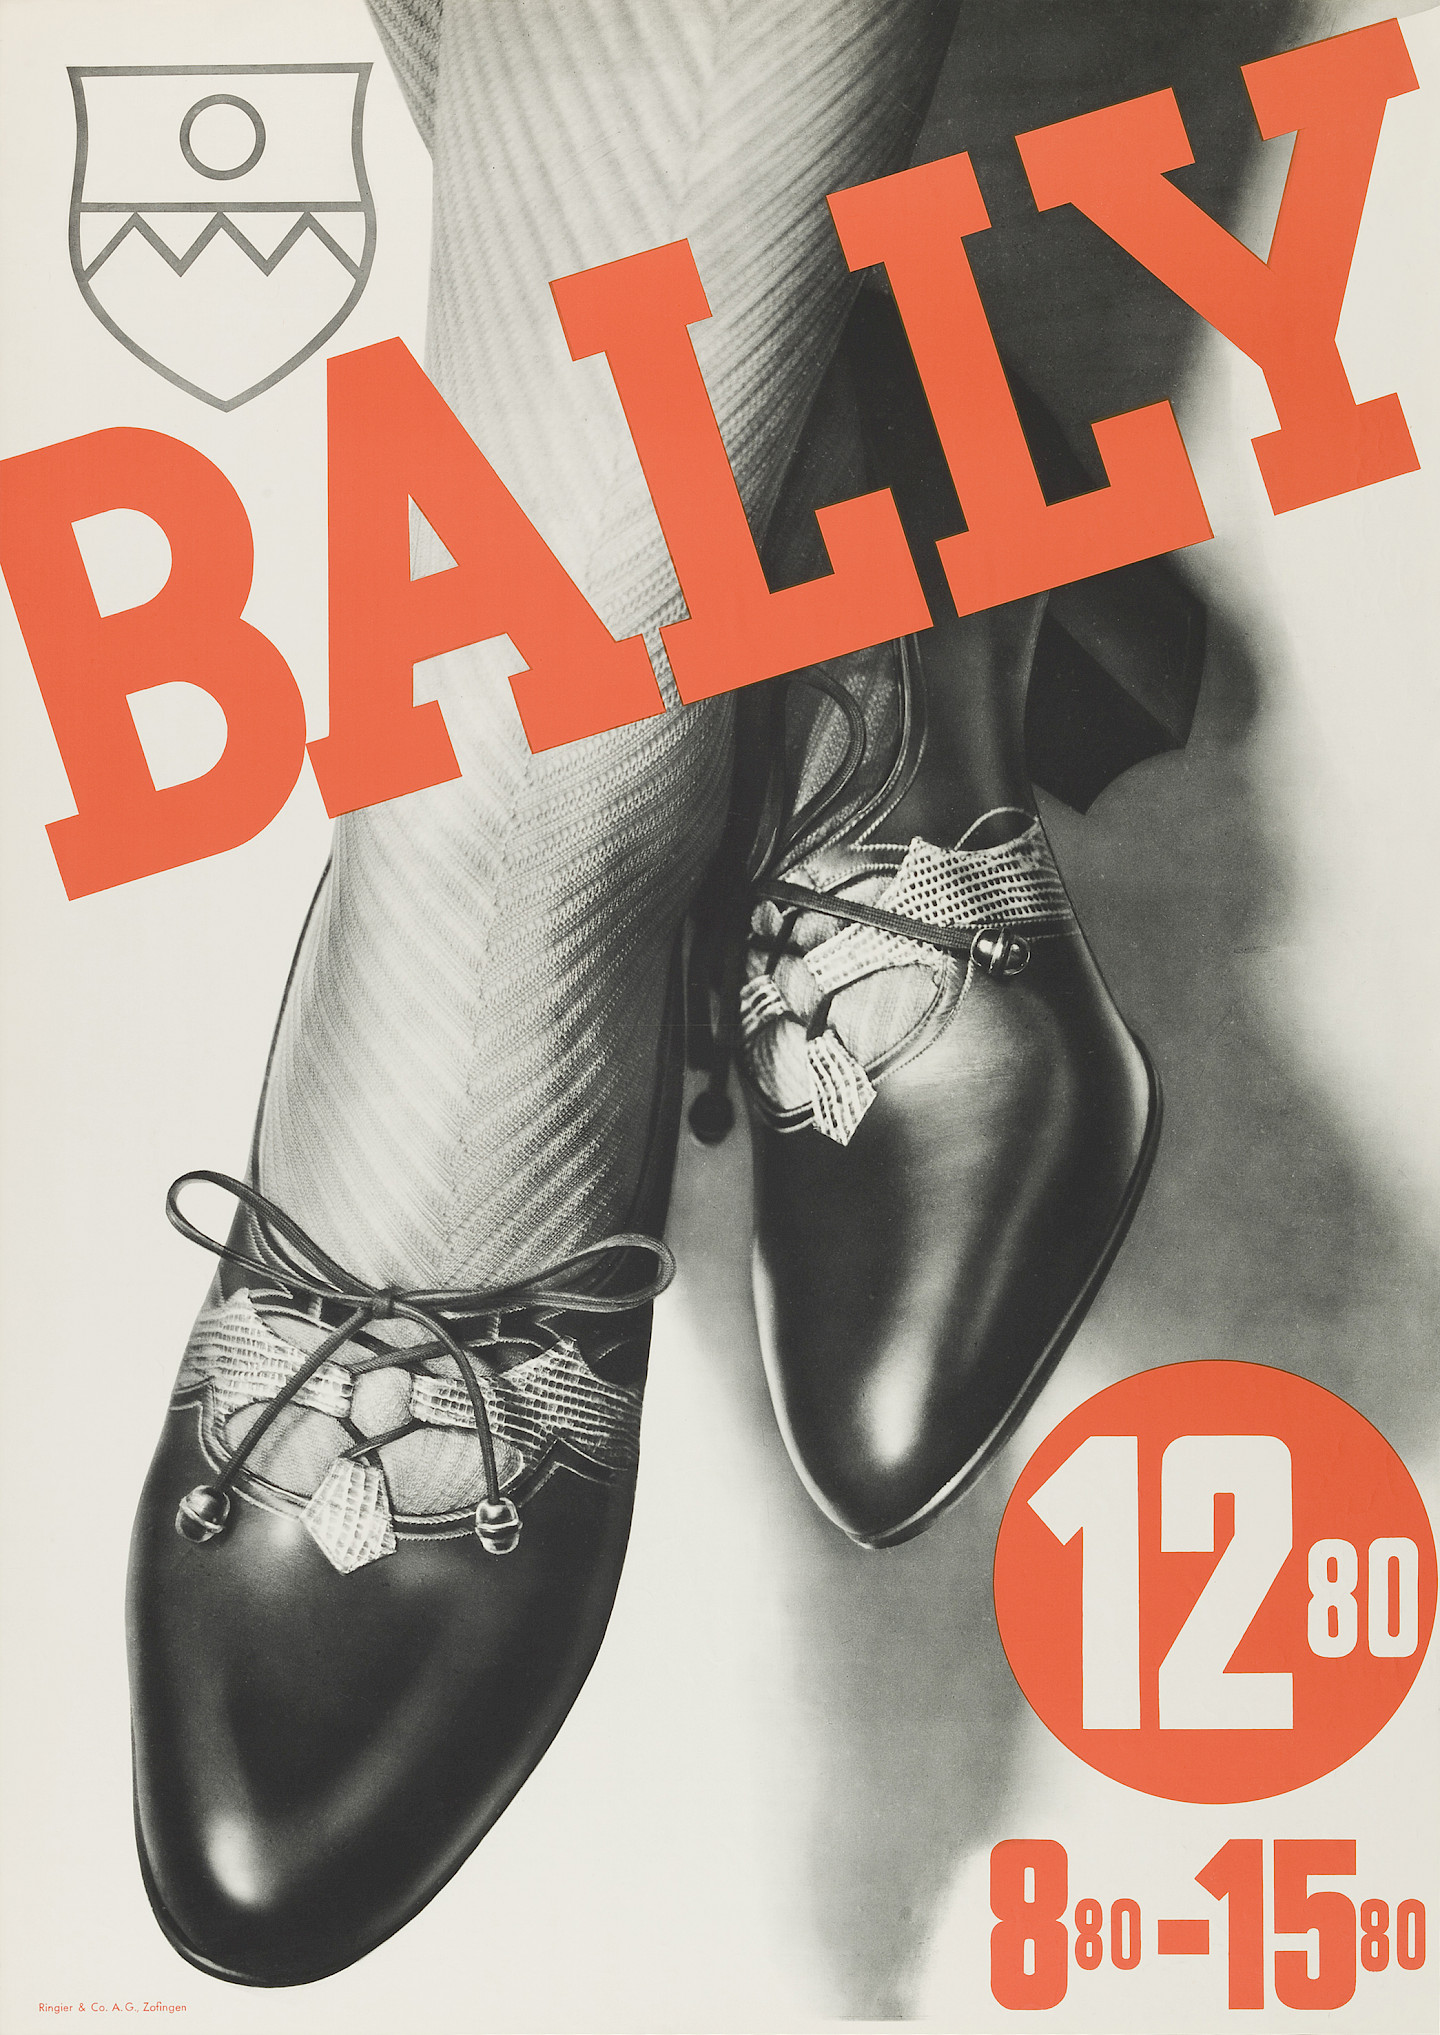 Agor AG, Bally, 1933, © Bally Schuhfabriken AG